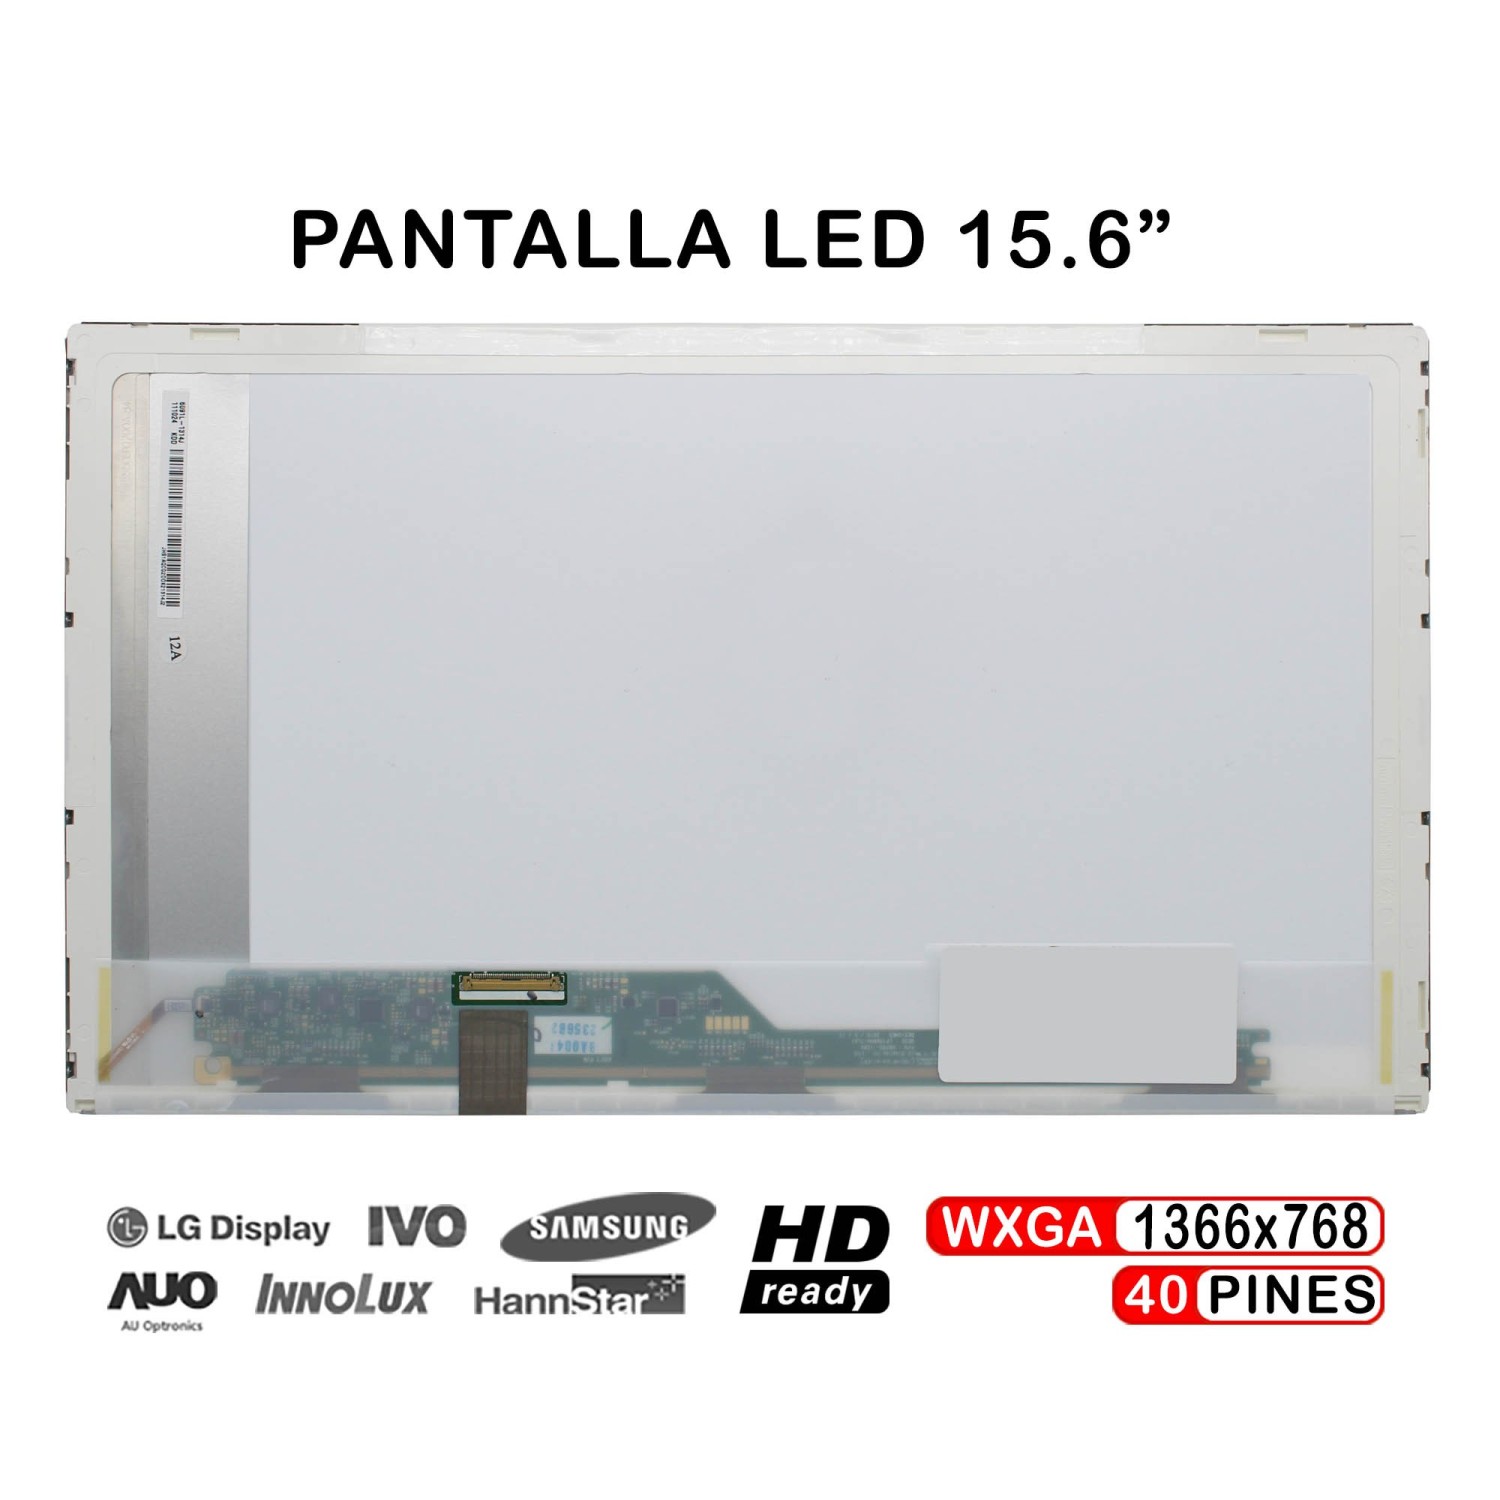 Pantalla LED 15.6 portátil B156XTN02.0 - B156XTN02.1